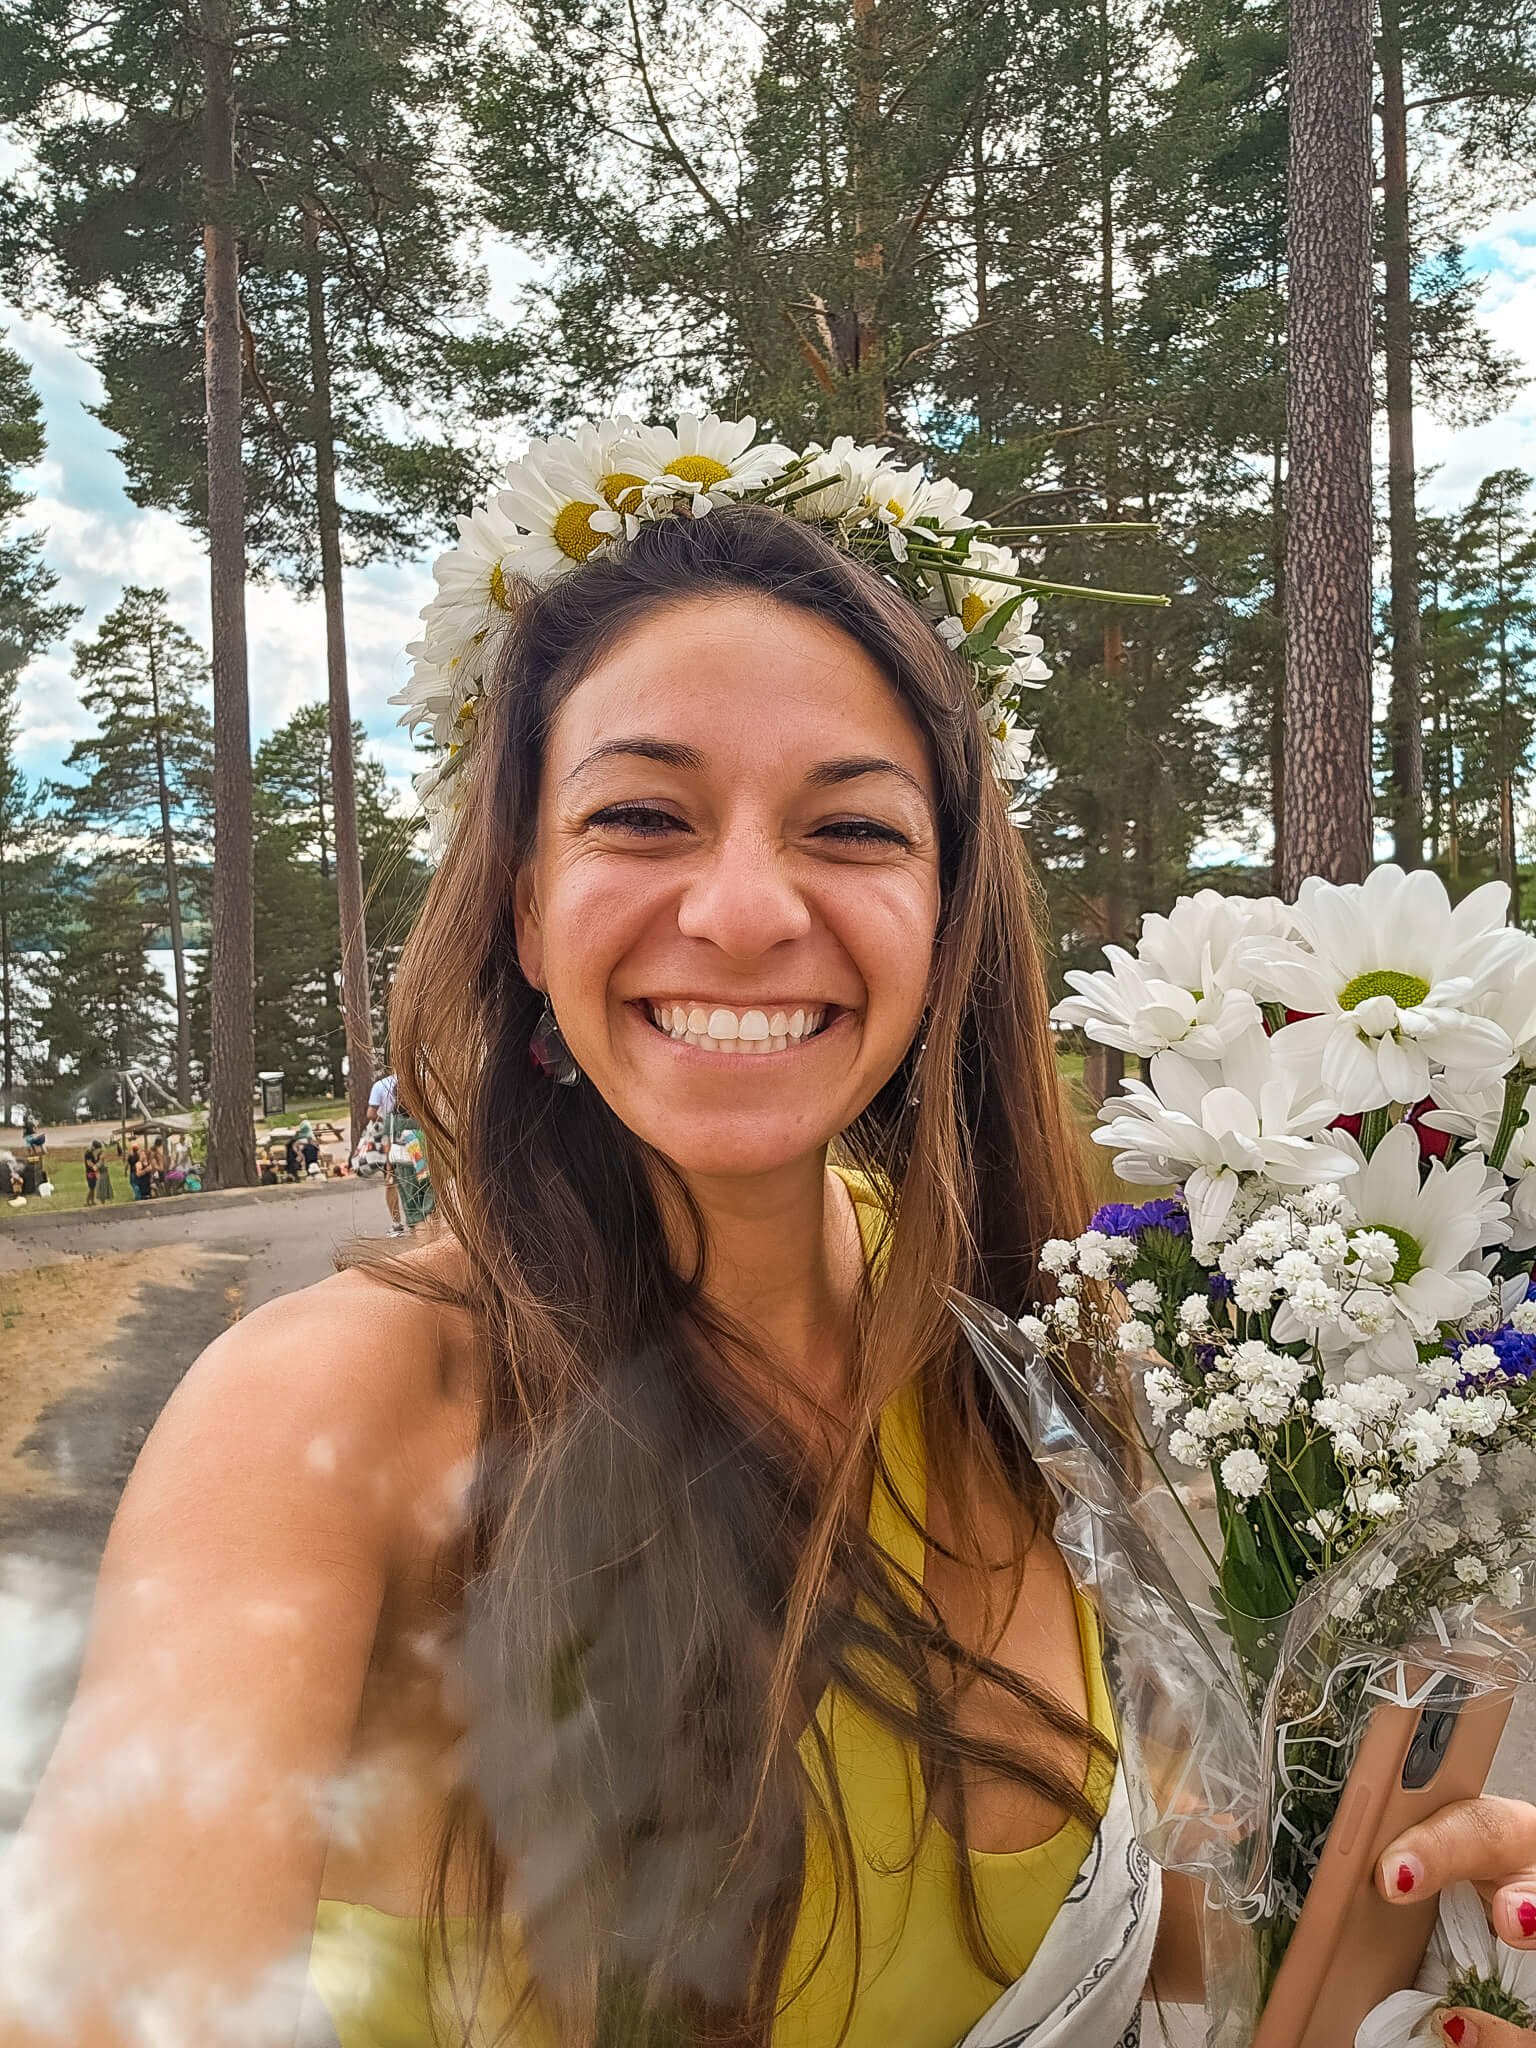 flower crown for Midsummer celebrated in Sweden